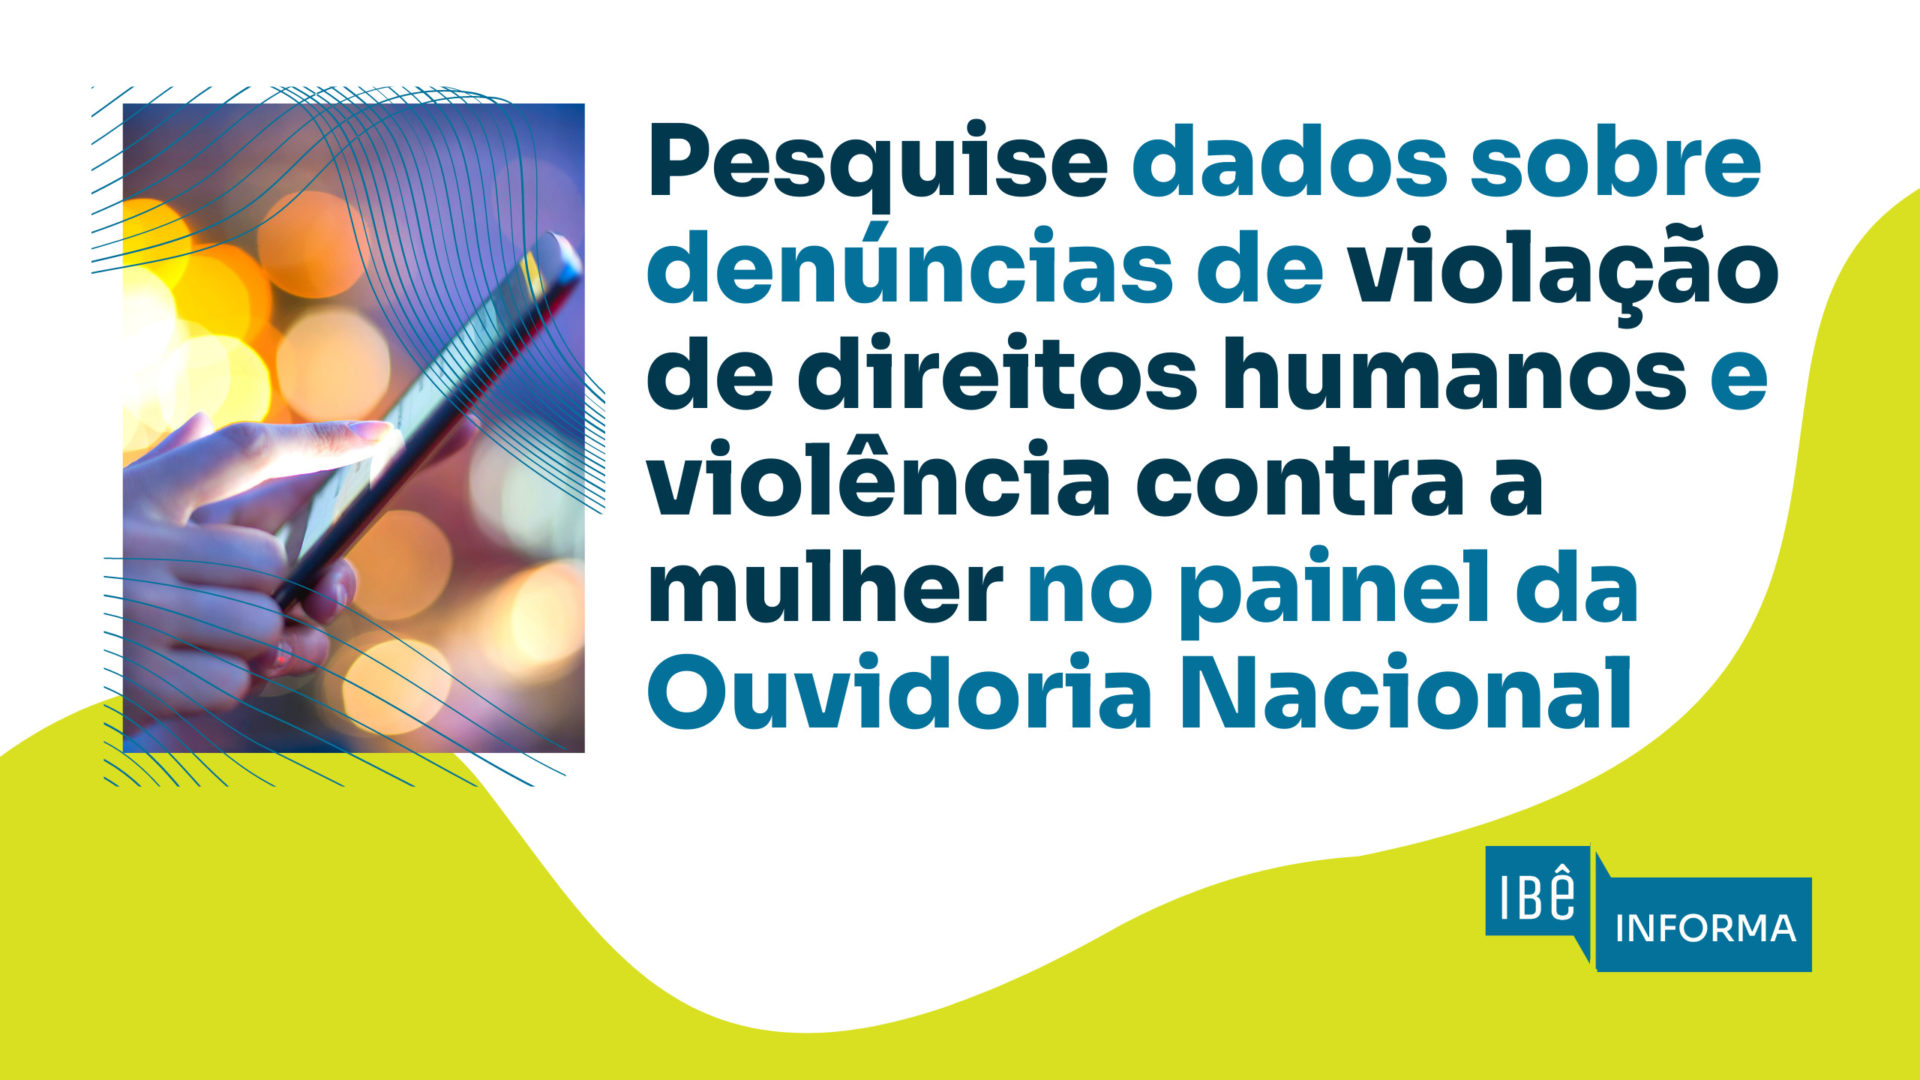 Painel interativo com dados sobre violação de direitos humanos no Brasil está disponível para consulta no site do Governo Federal